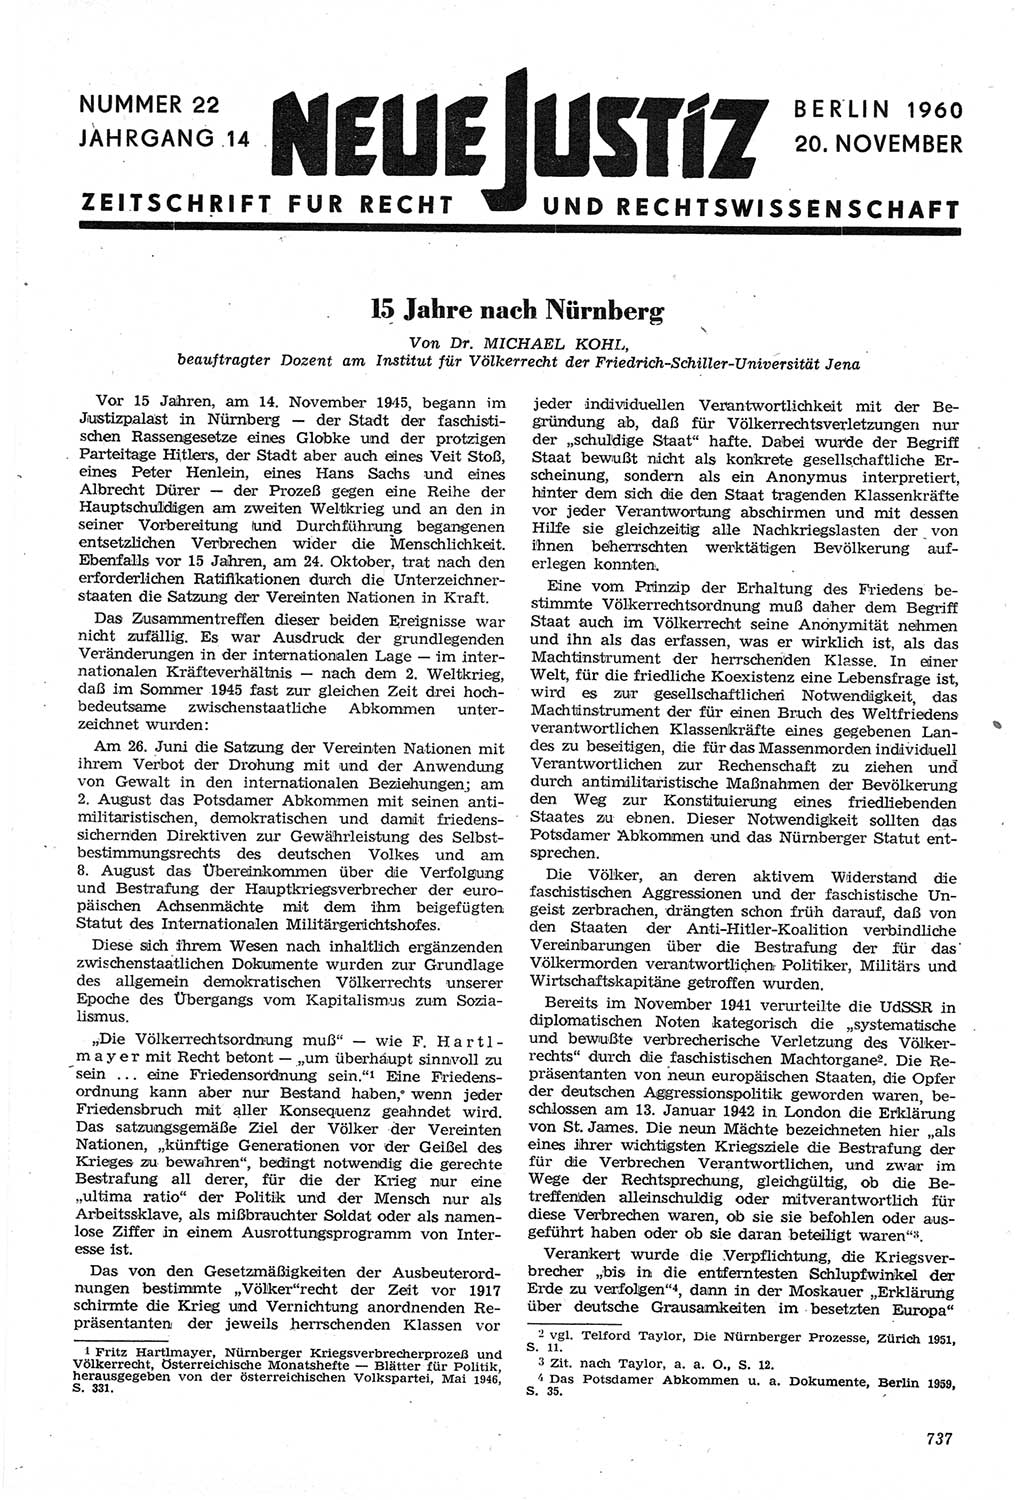 Neue Justiz (NJ), Zeitschrift für Recht und Rechtswissenschaft [Deutsche Demokratische Republik (DDR)], 14. Jahrgang 1960, Seite 737 (NJ DDR 1960, S. 737)